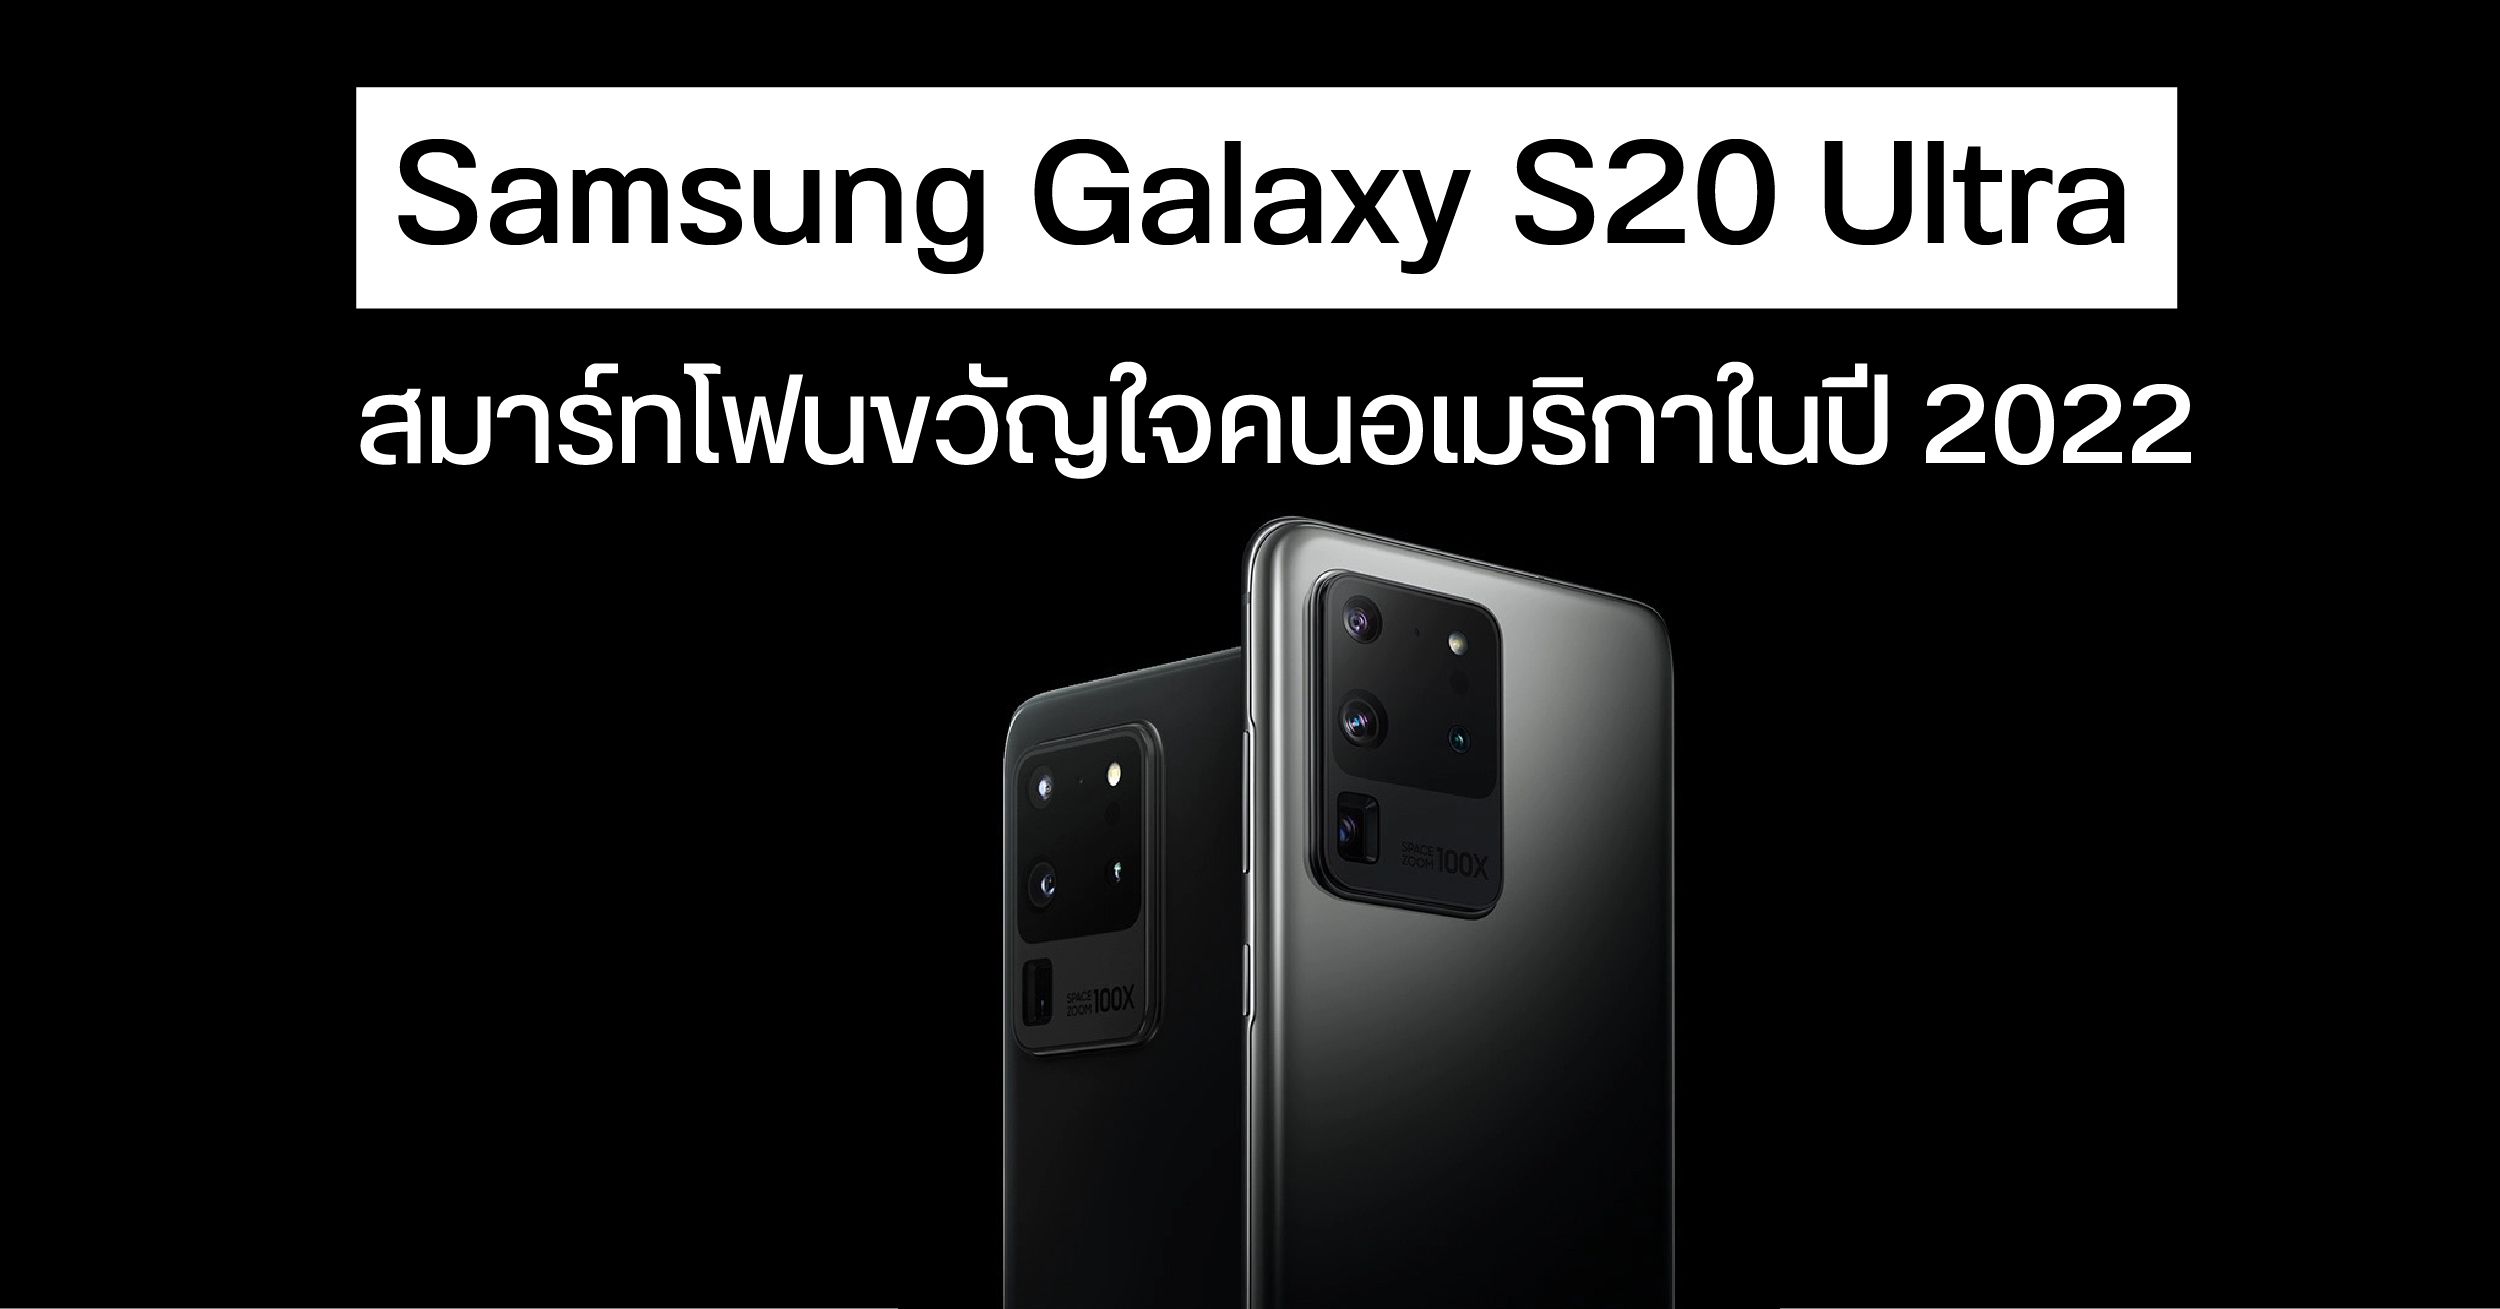 Samsung Galaxy S20 Ultra ขึ้นแท่นสมาร์ทโฟนที่ชาวอเมริกันชอบใช้มากที่สุดในปี 2022